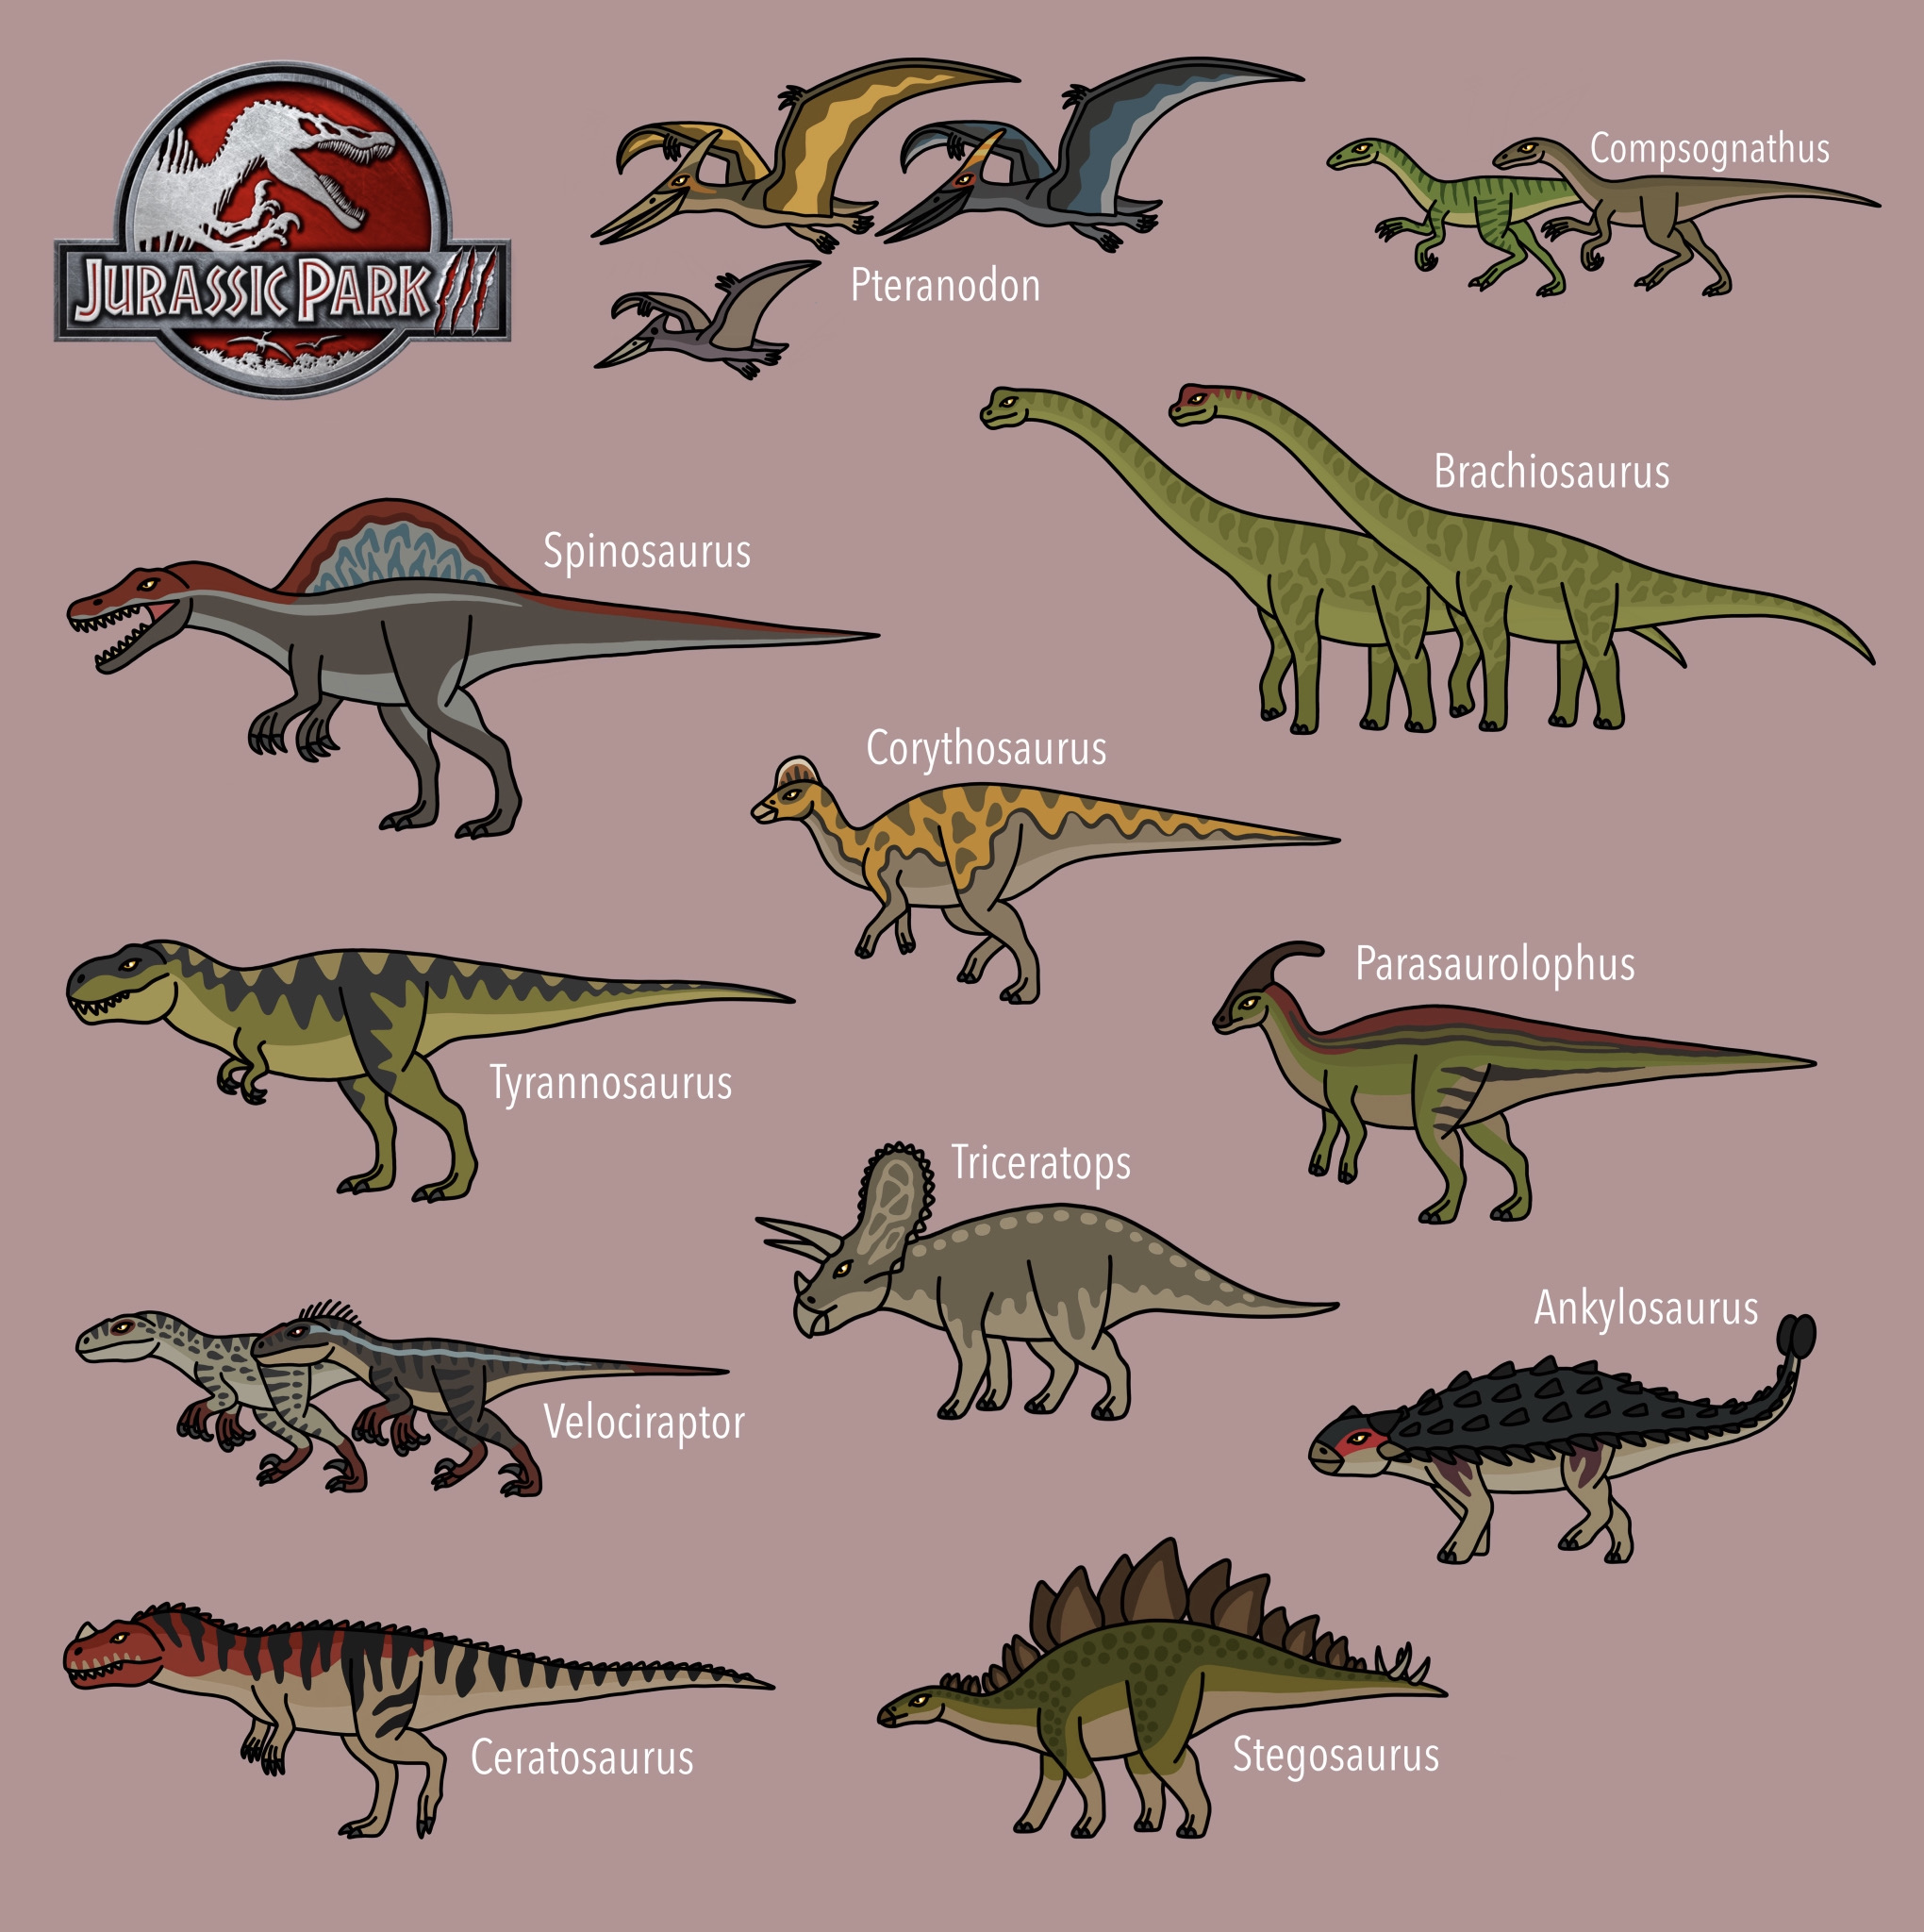 Jurassic Park 3 all dinosaurs by bestomator1111 on DeviantArt